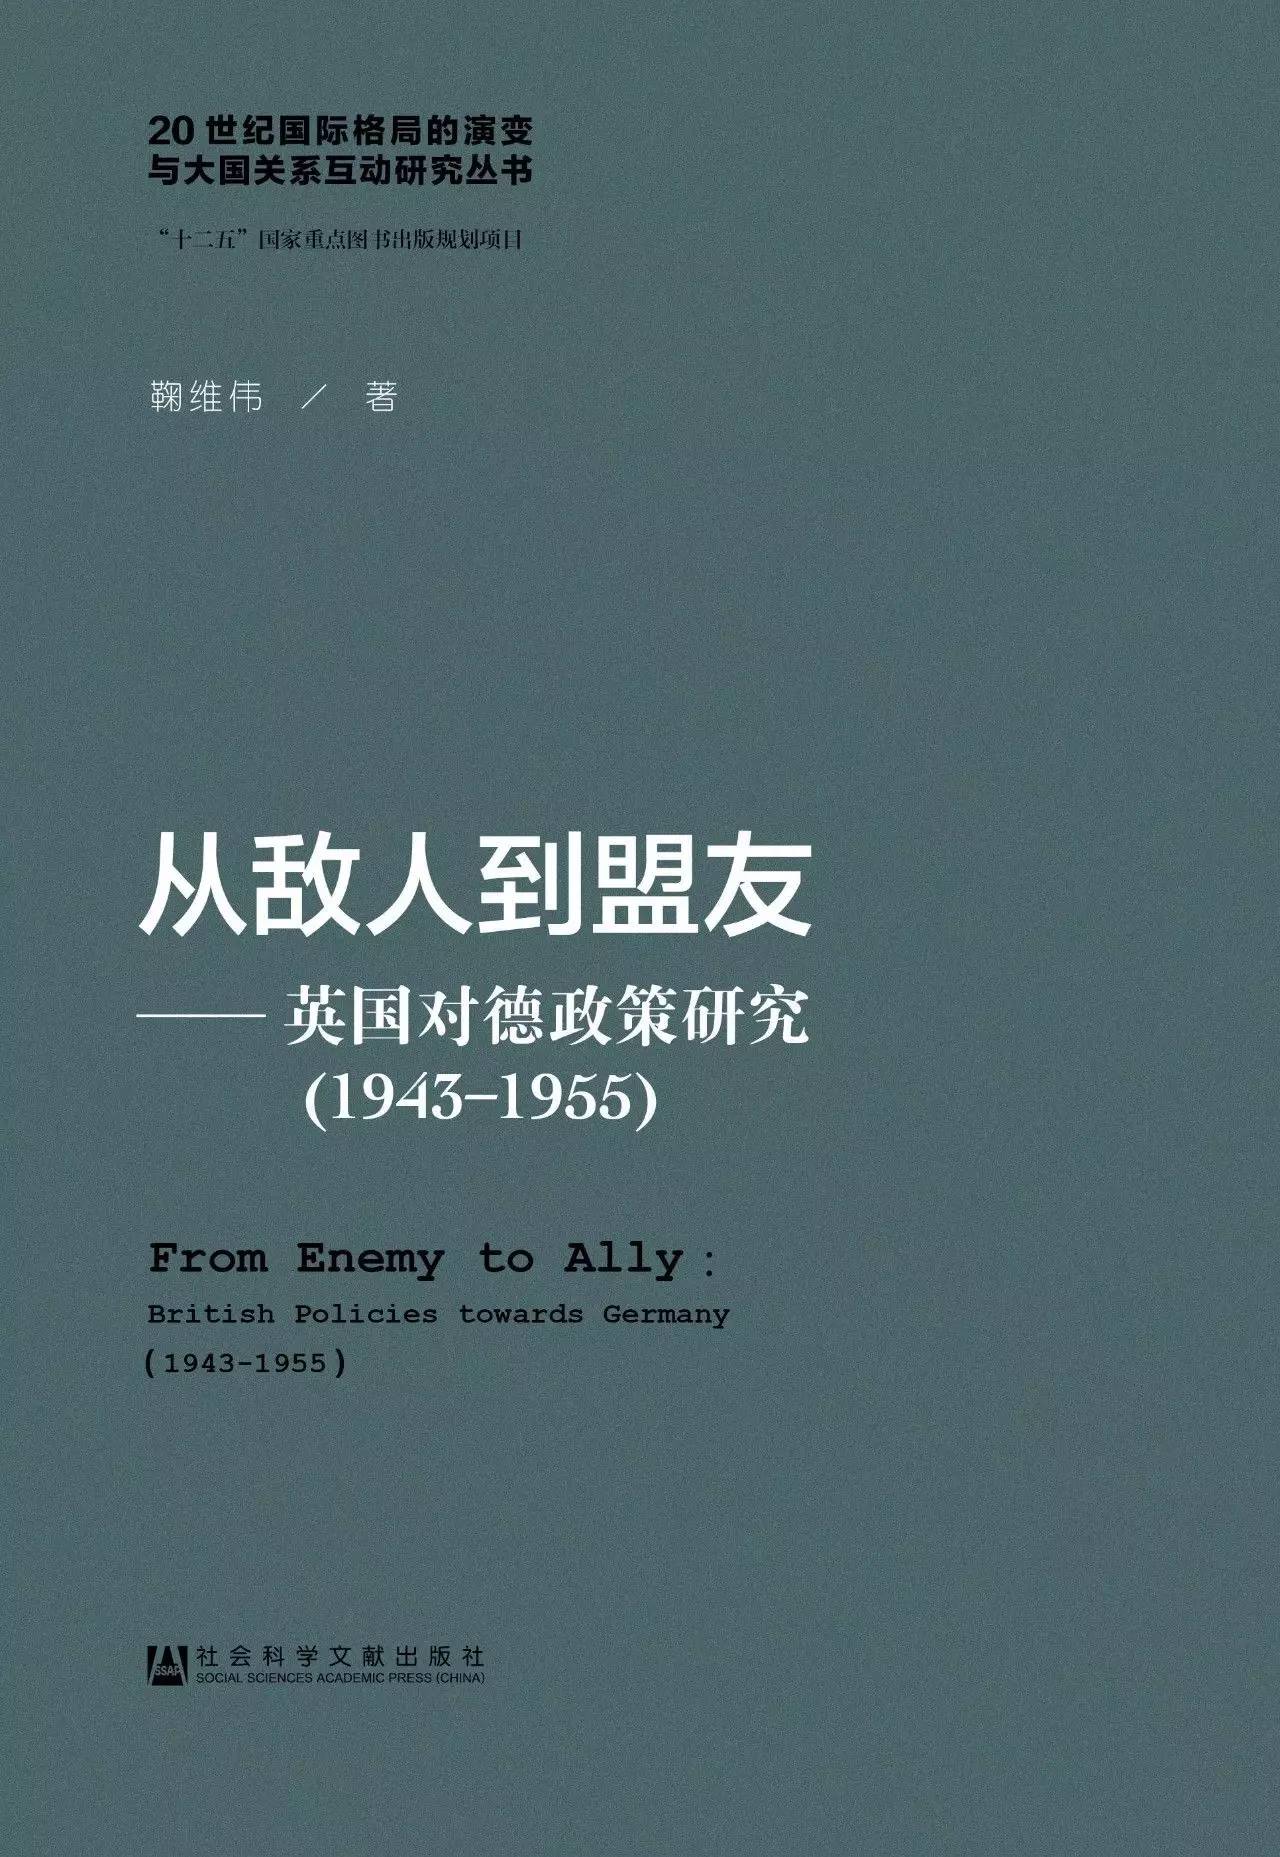 藏·书单 | 20世纪的大国关系与国际格局